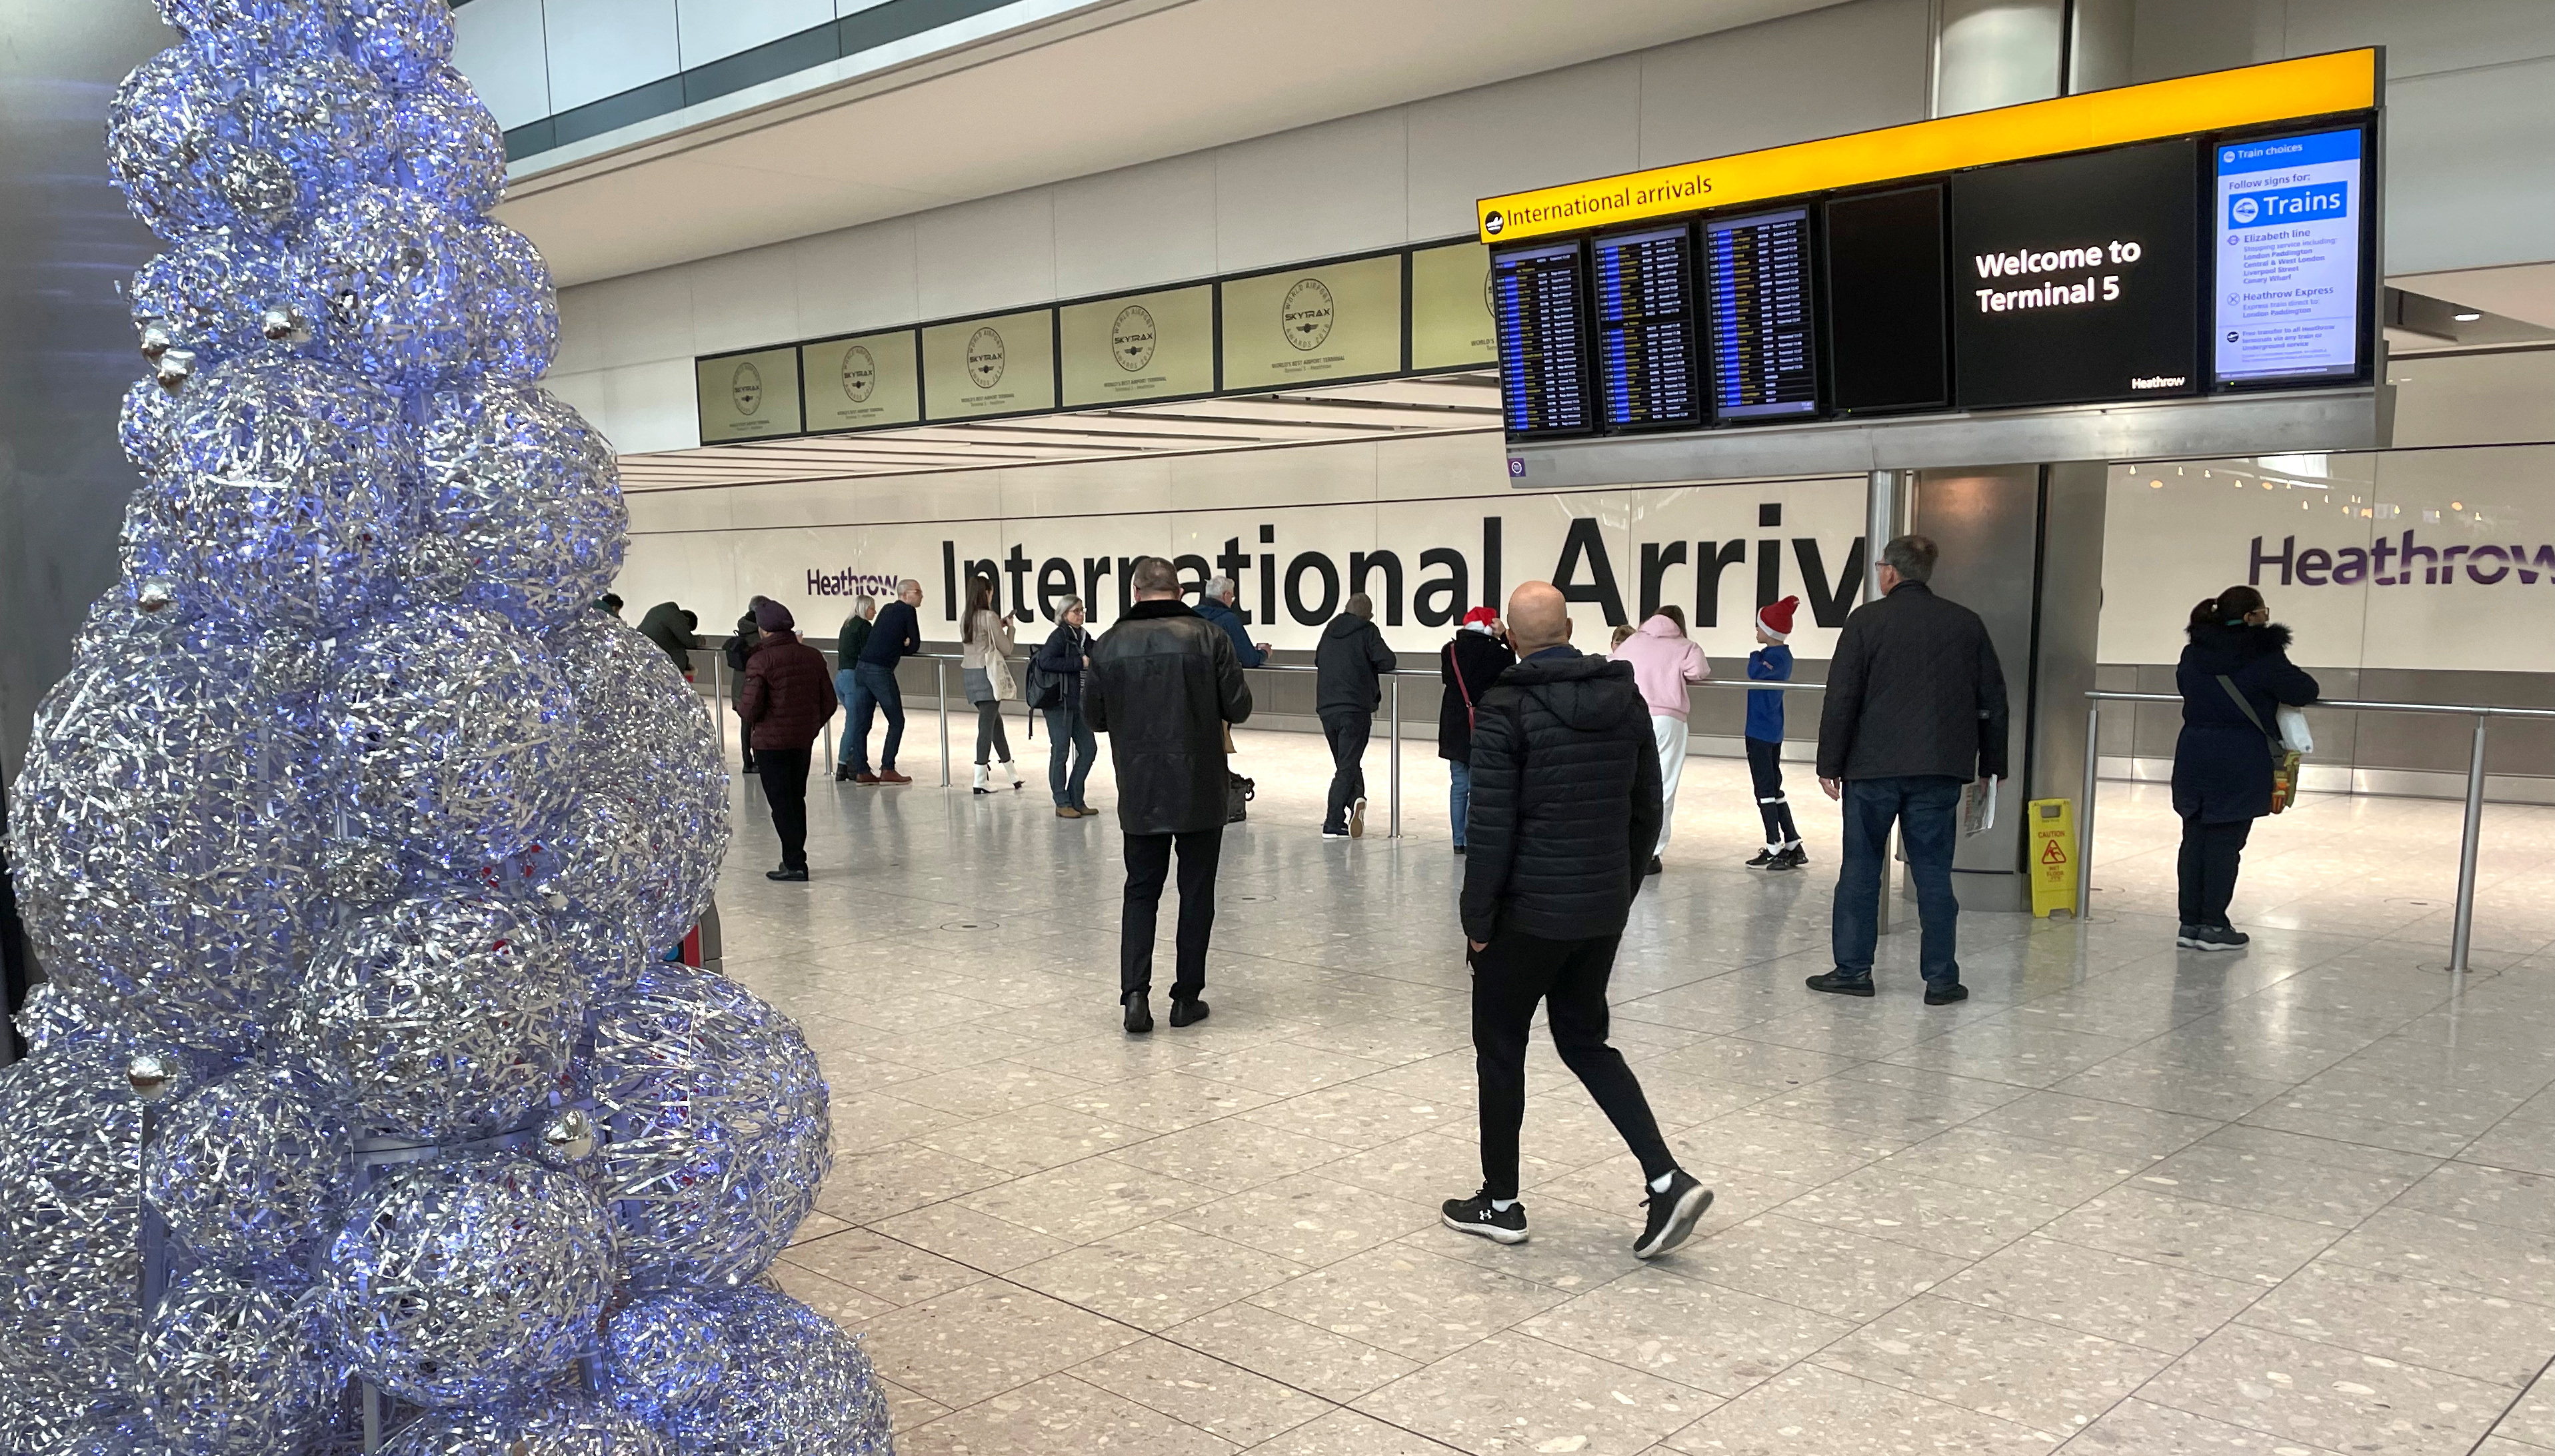 royaume-uni : un bug informatique provoque d'importants retards dans les aéroports